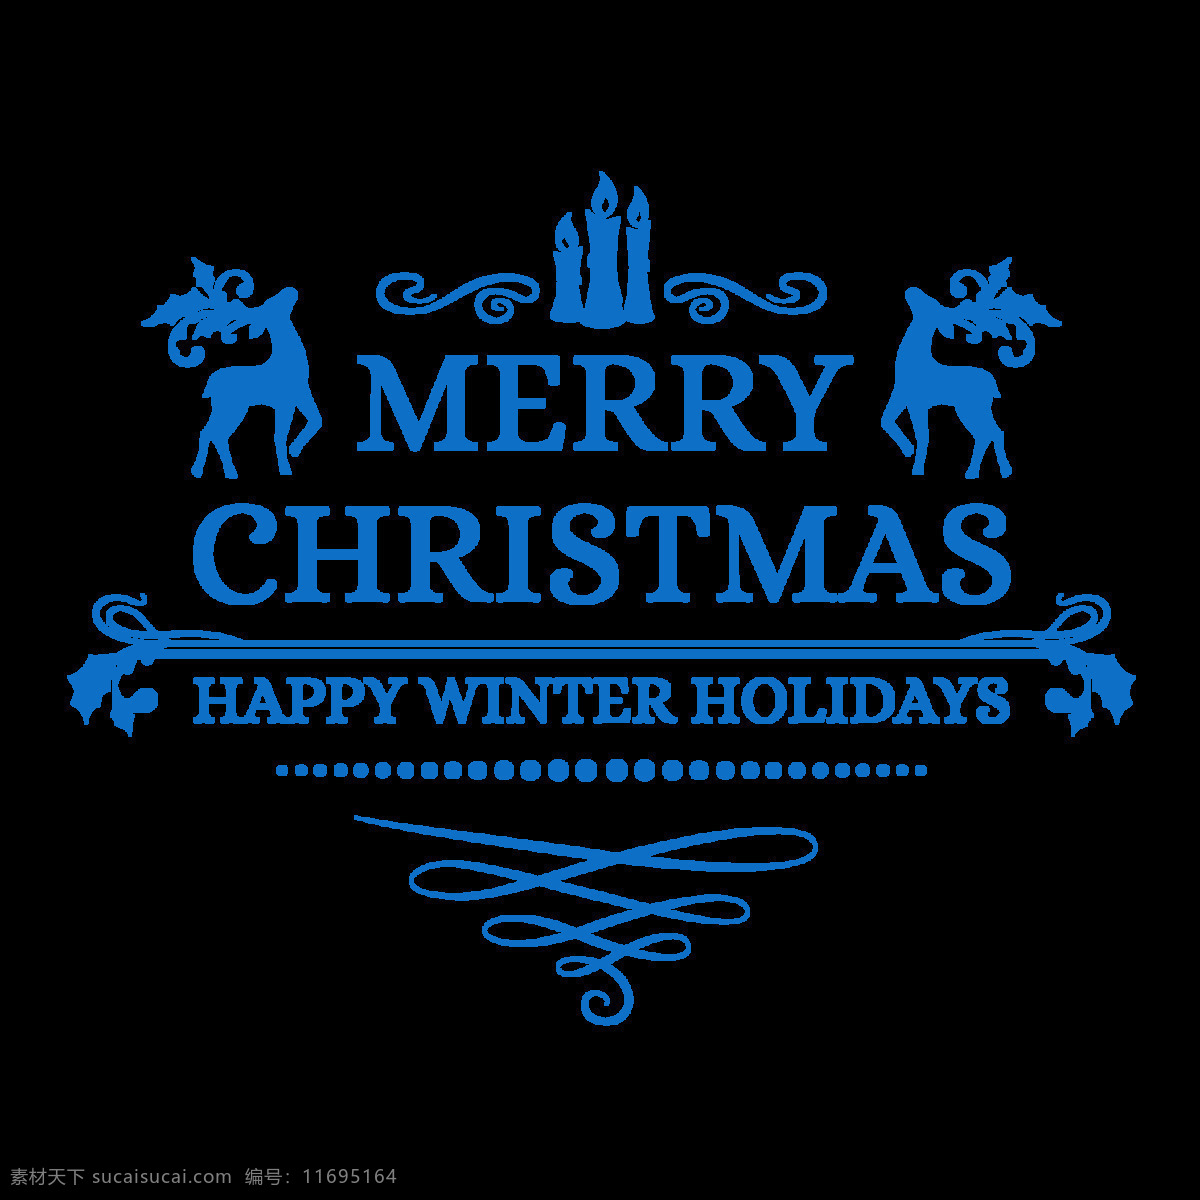 蓝色 圣诞快乐 字体 元素 christmas merry 节日字体 卡通元素 蓝色字体 设计素材 设计元素 圣诞装饰 圣诞字体 新年快乐 装饰图案